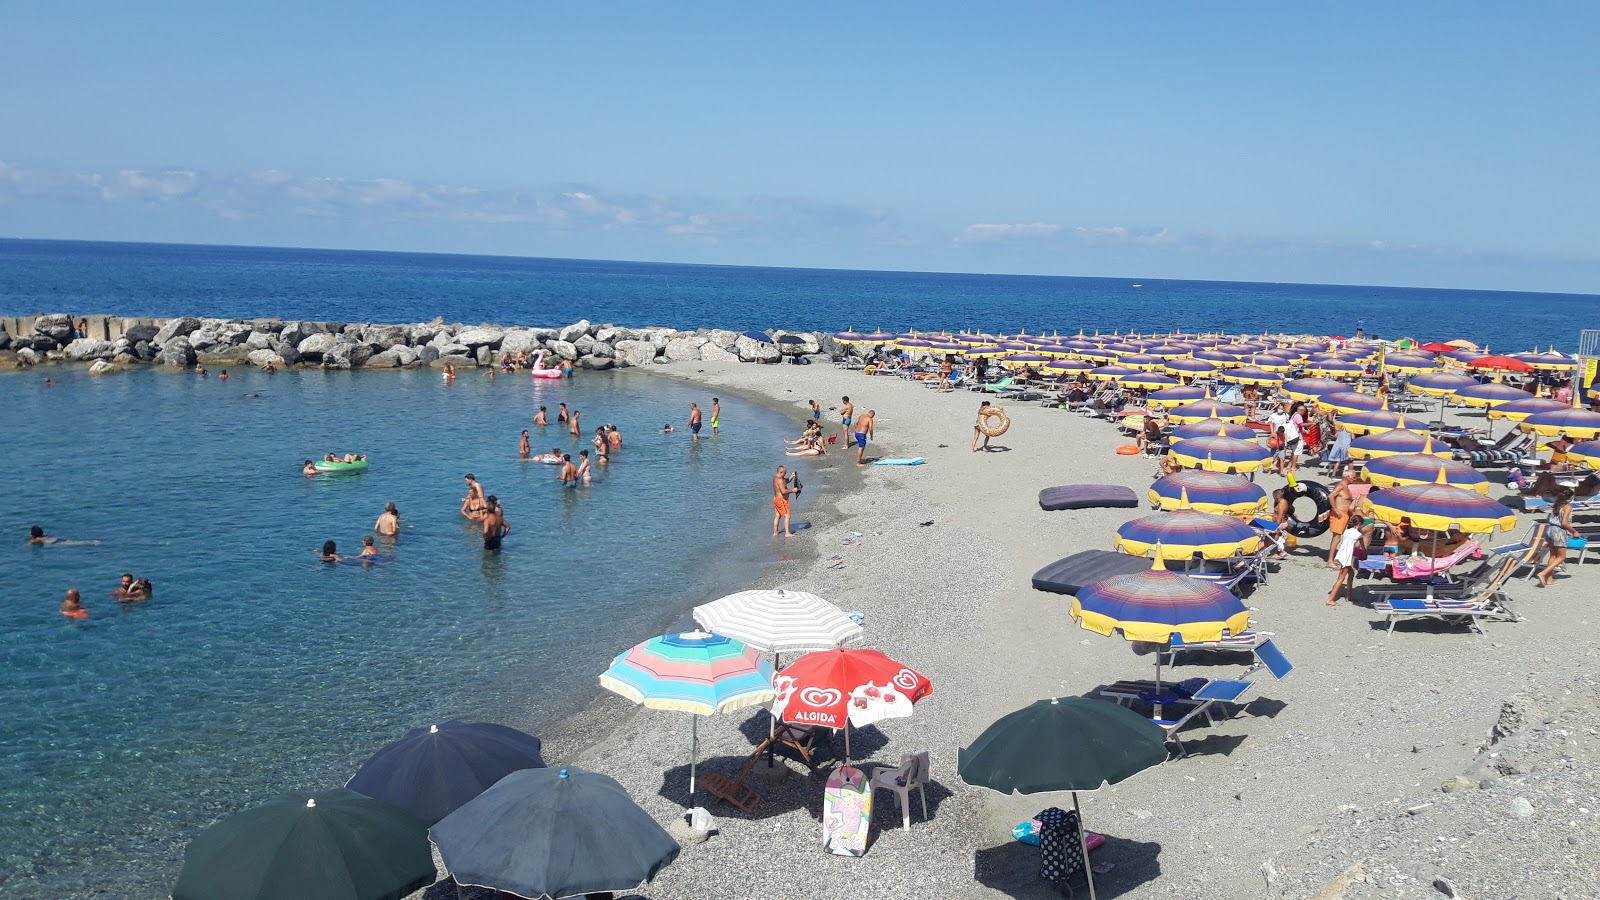 Foto de Spiaggia Coreca com areia cinza superfície